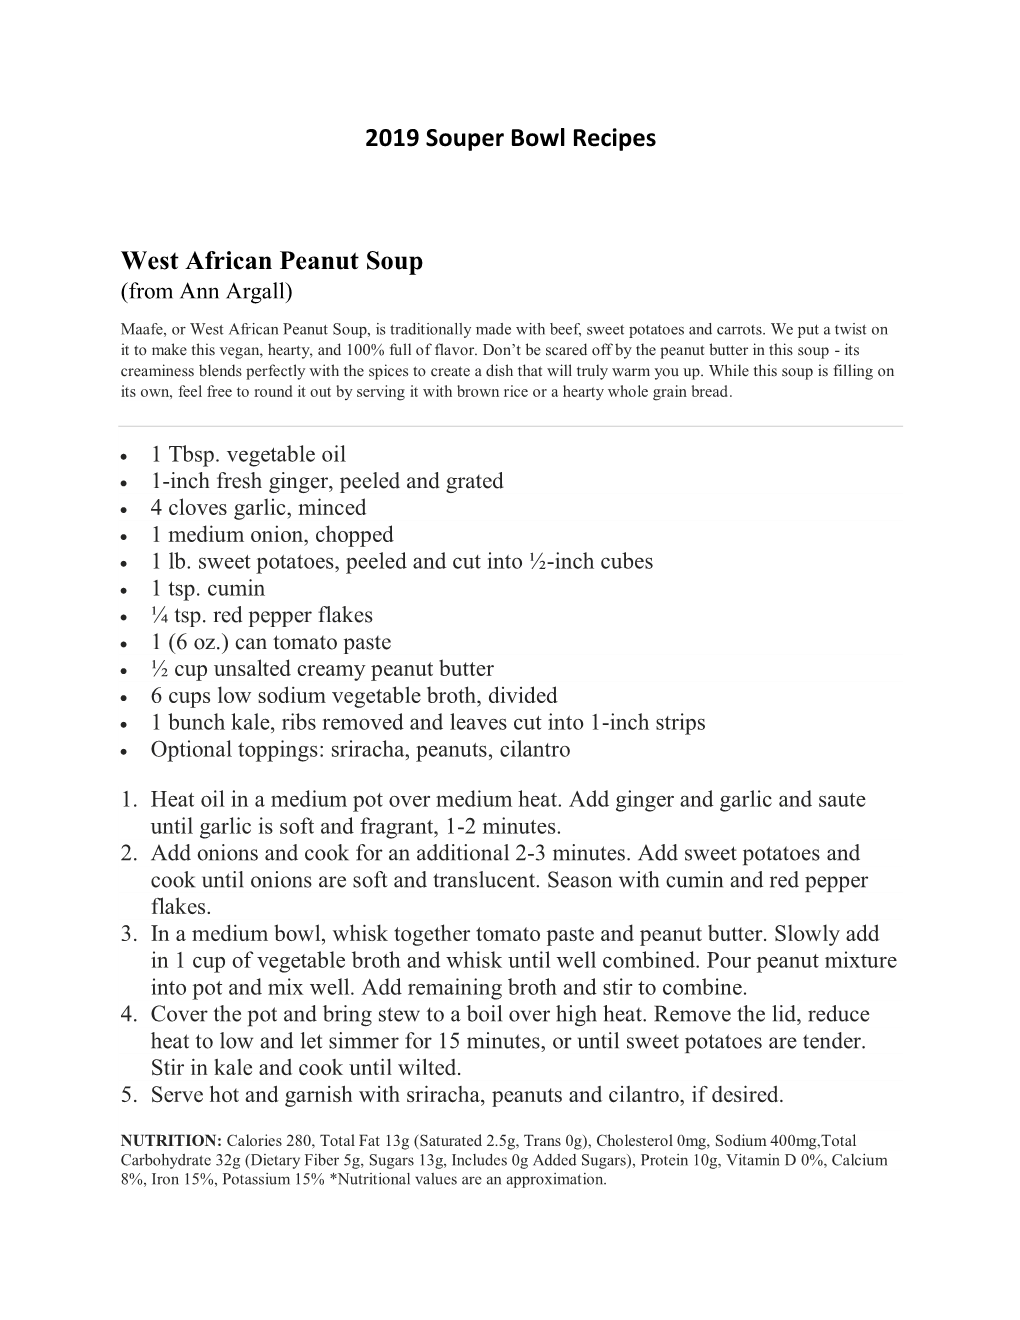 2019 Souper Bowl Recipes West African Peanut Soup